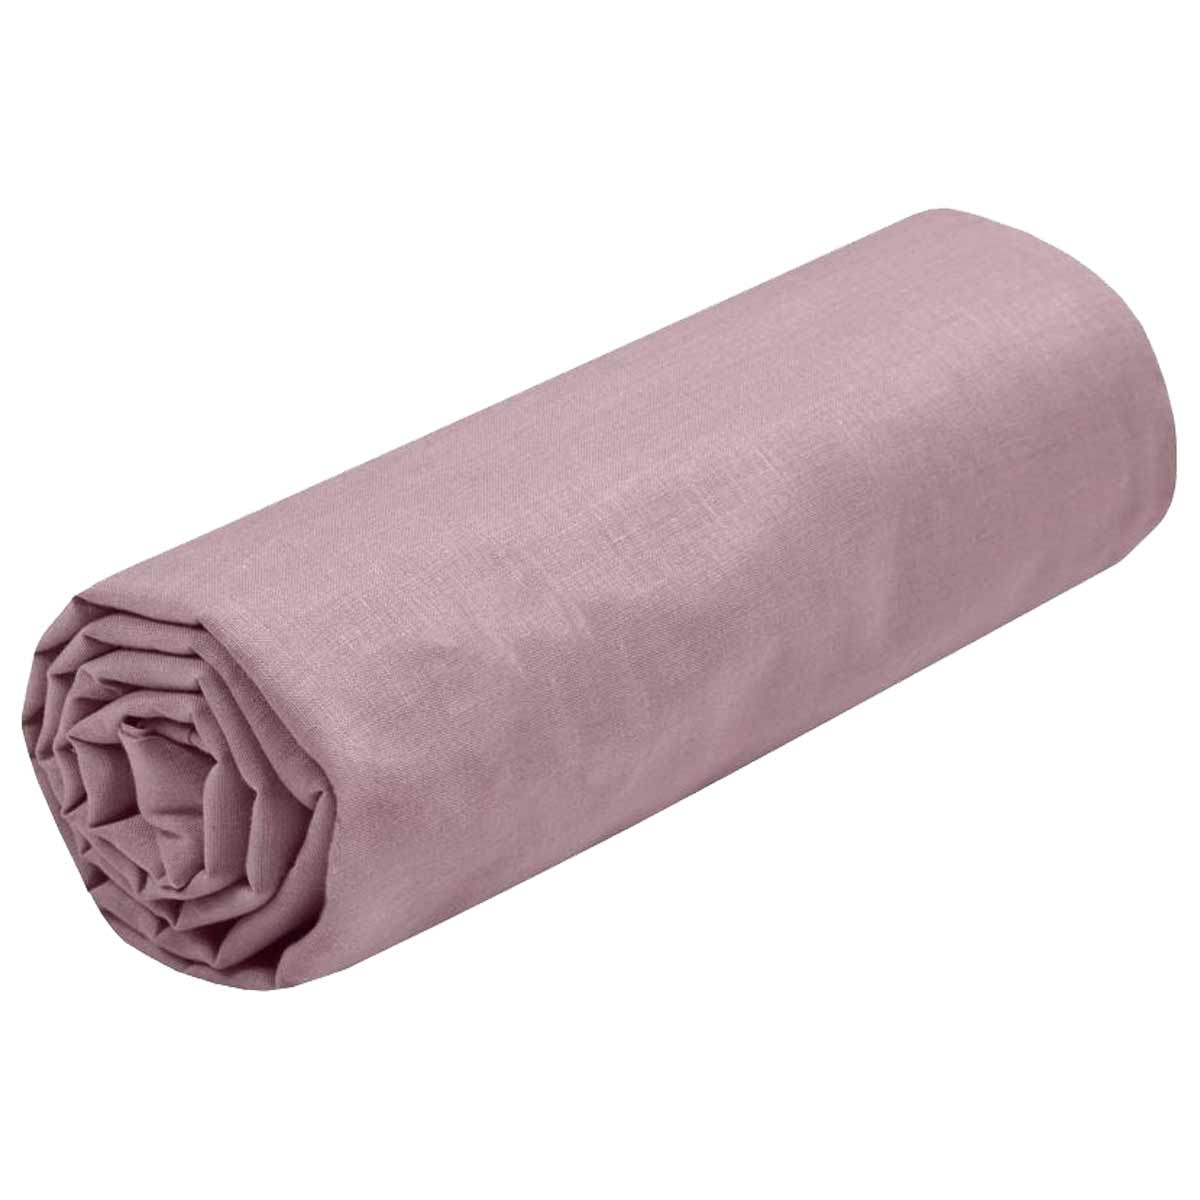 Drap housse rose pastel uni, 130x170 cm (51x67 inches), coton